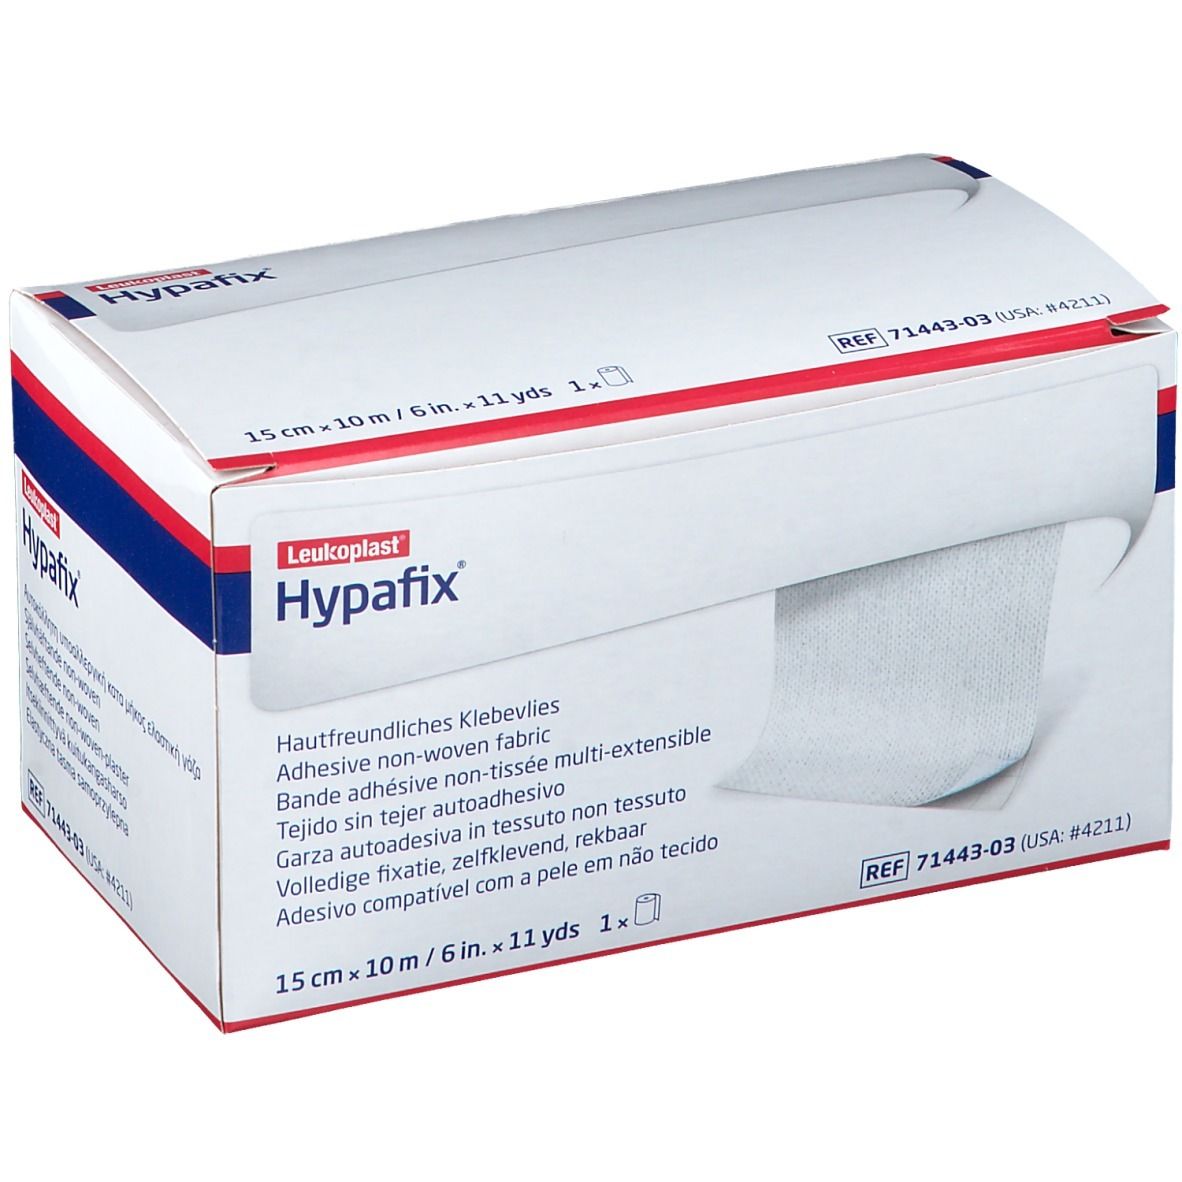 Hypafix® 15 cm x 10 m Bande non-tissée adhésive hypoallergénique